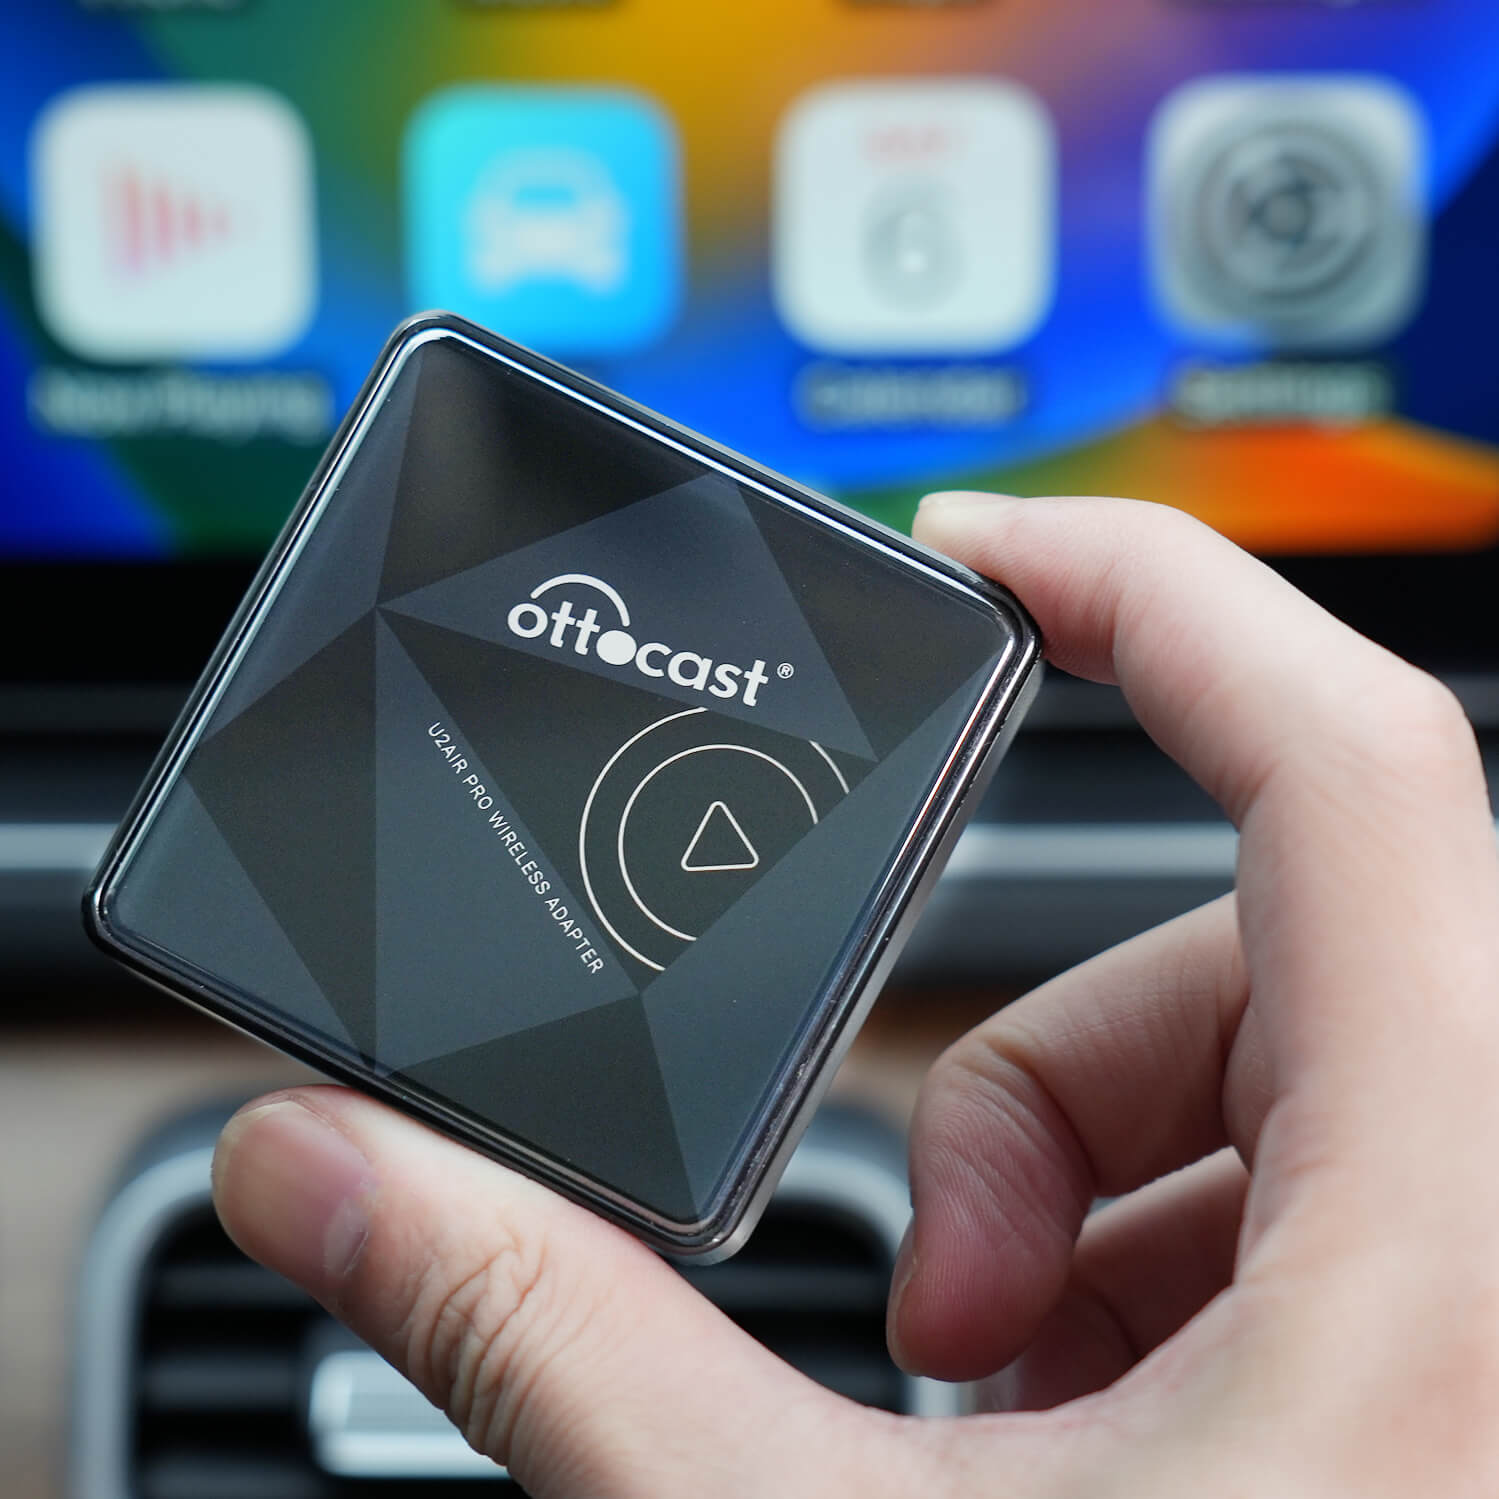 Achetez en gros Adaptateur Carplay Sans Fil Ottocast Pour Iphone